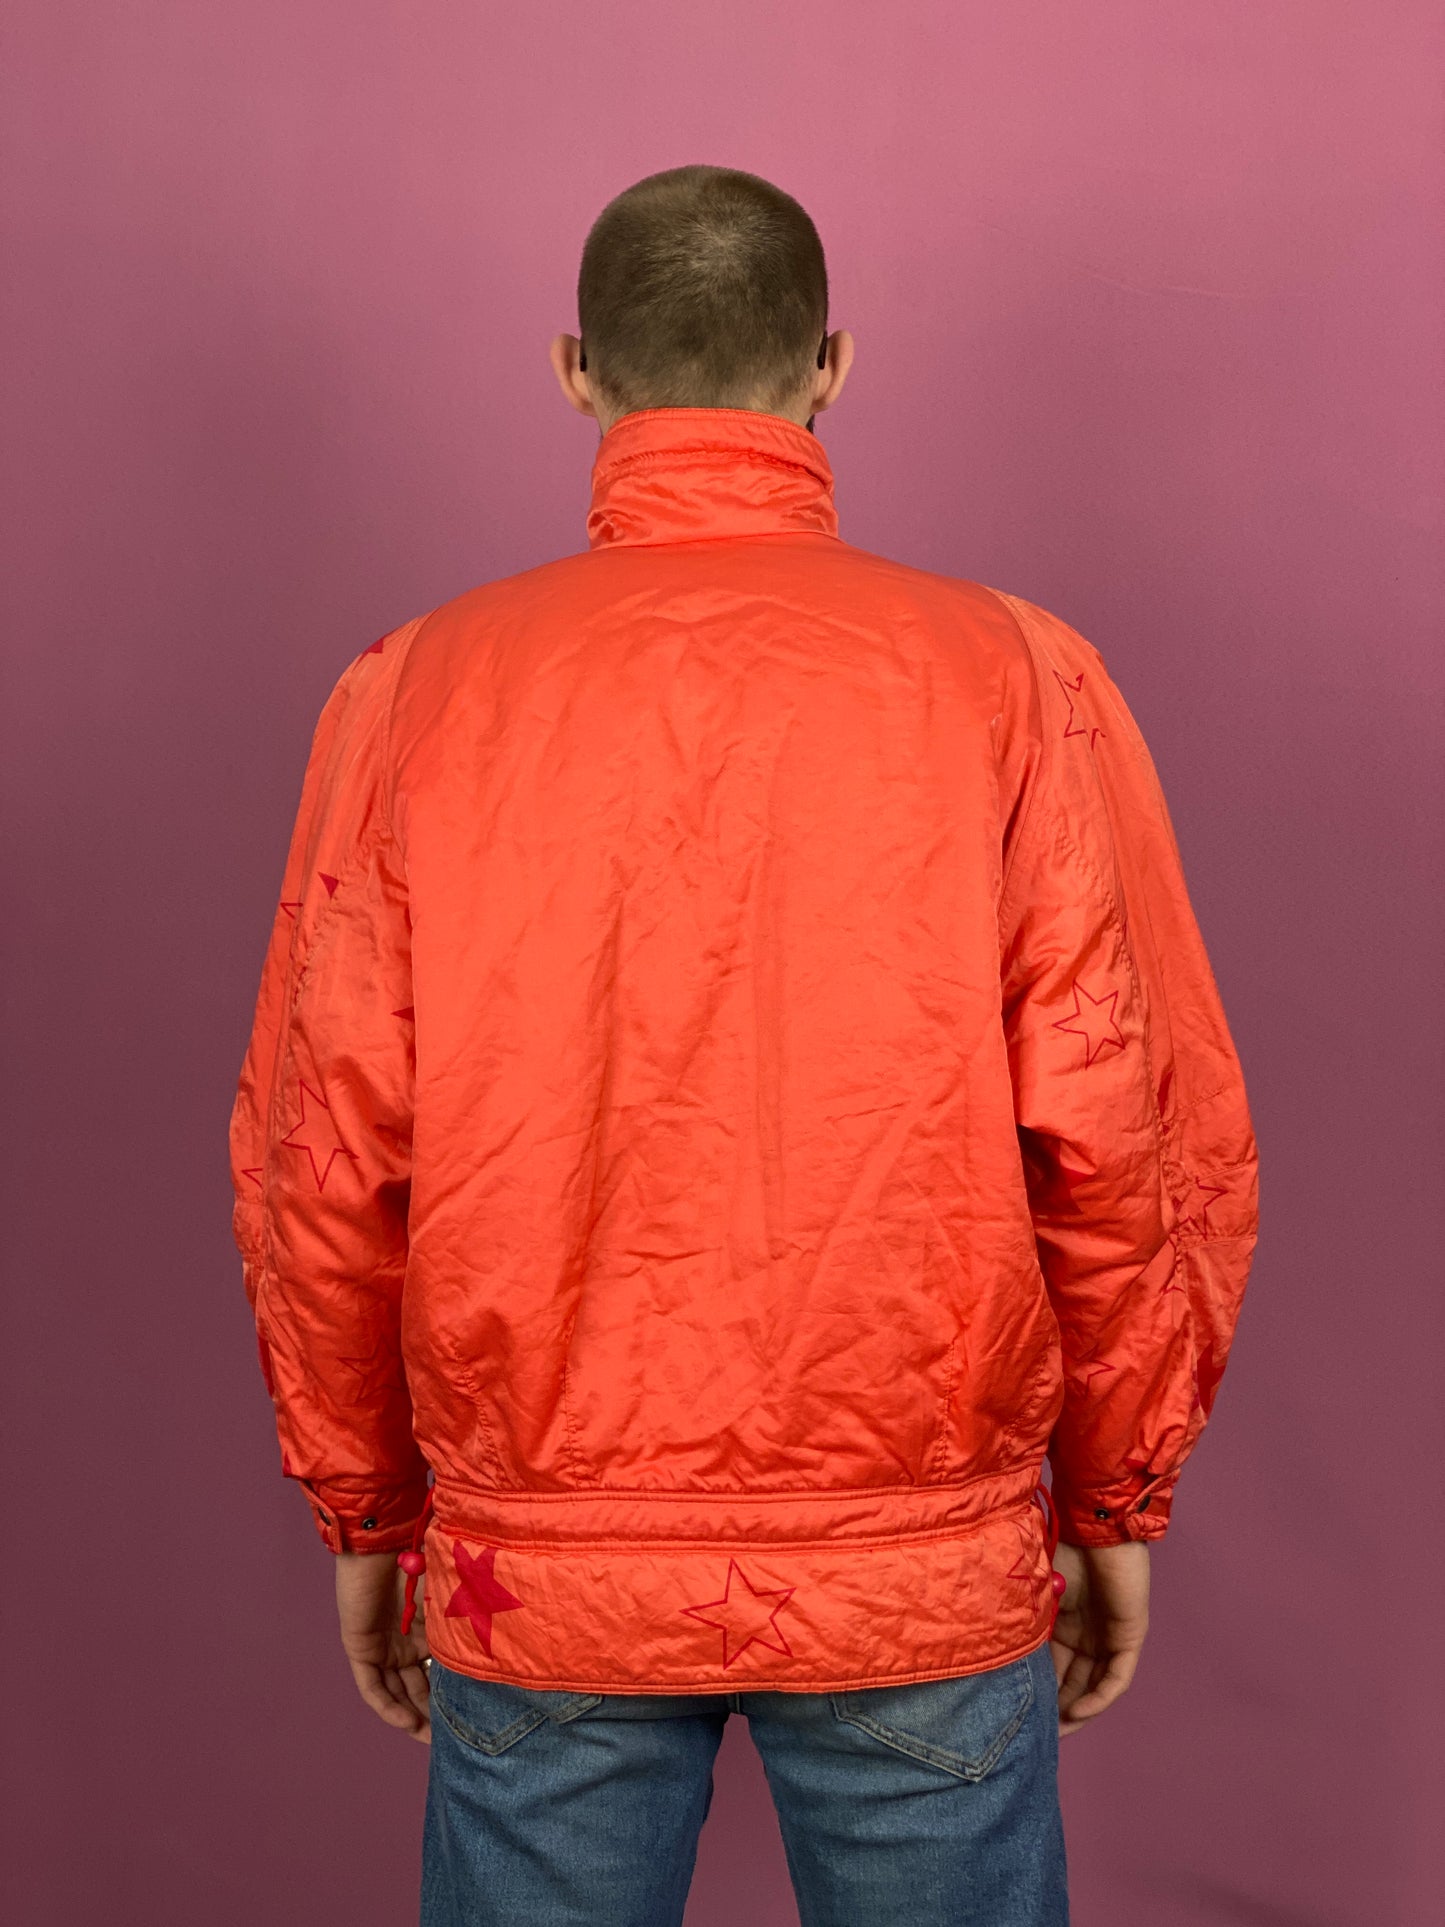 90s Vintage Men's Ski Jacket - Medium Orange Nylon